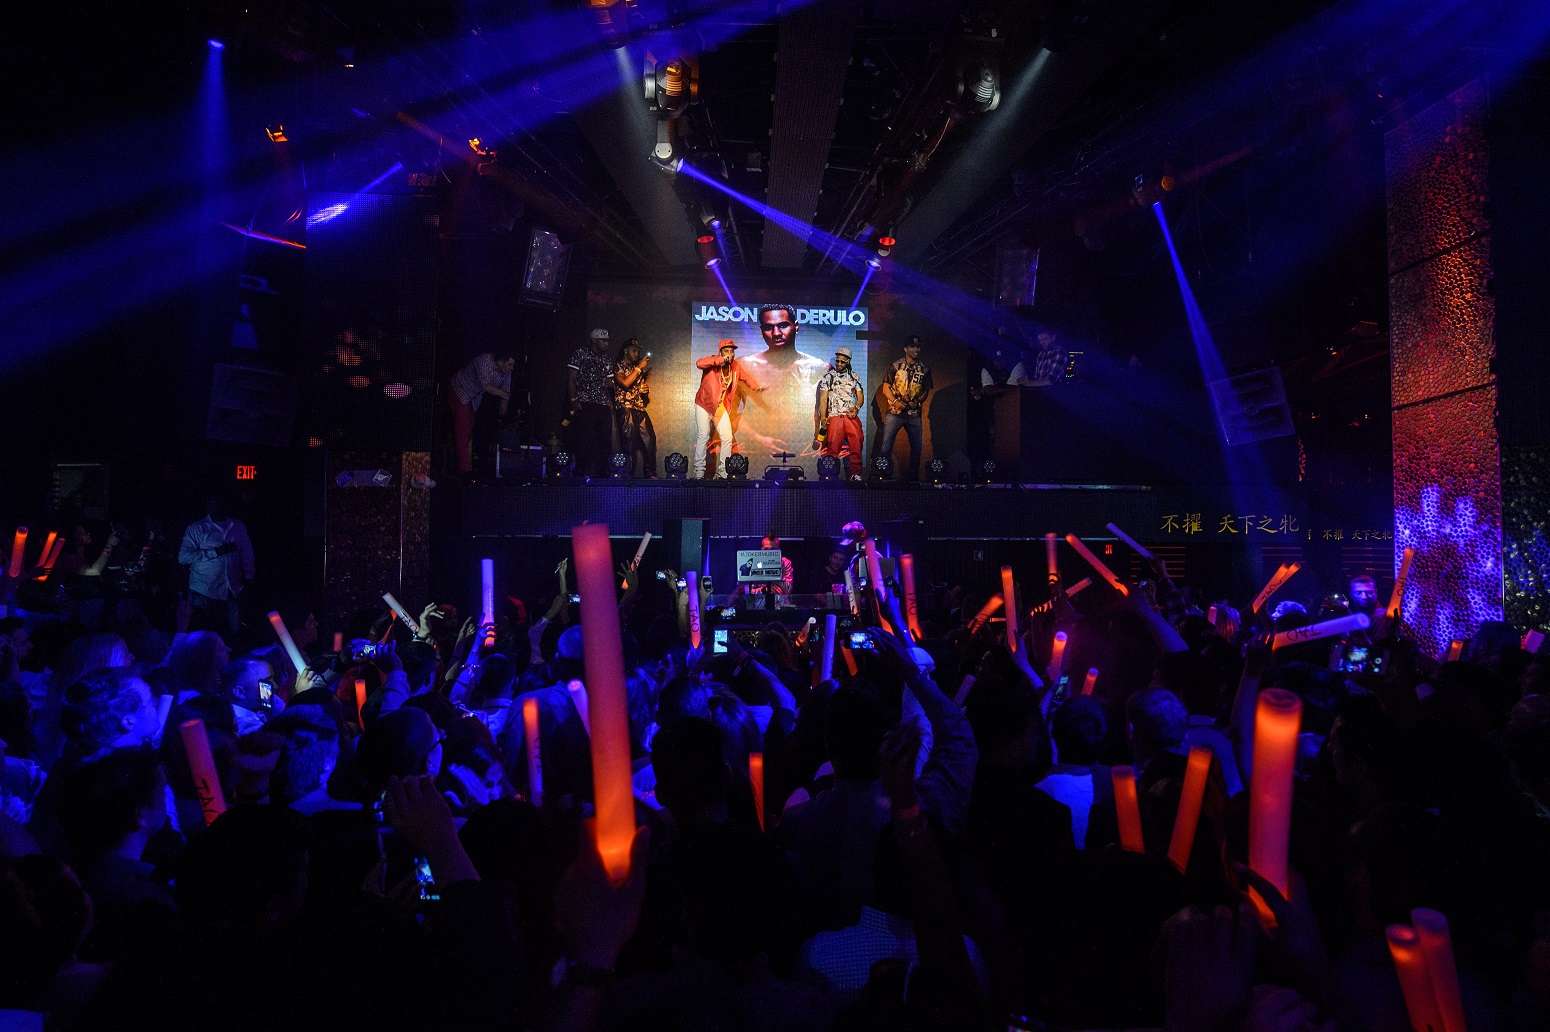 Jason Derulo Album Release Party at TAO Nightclub